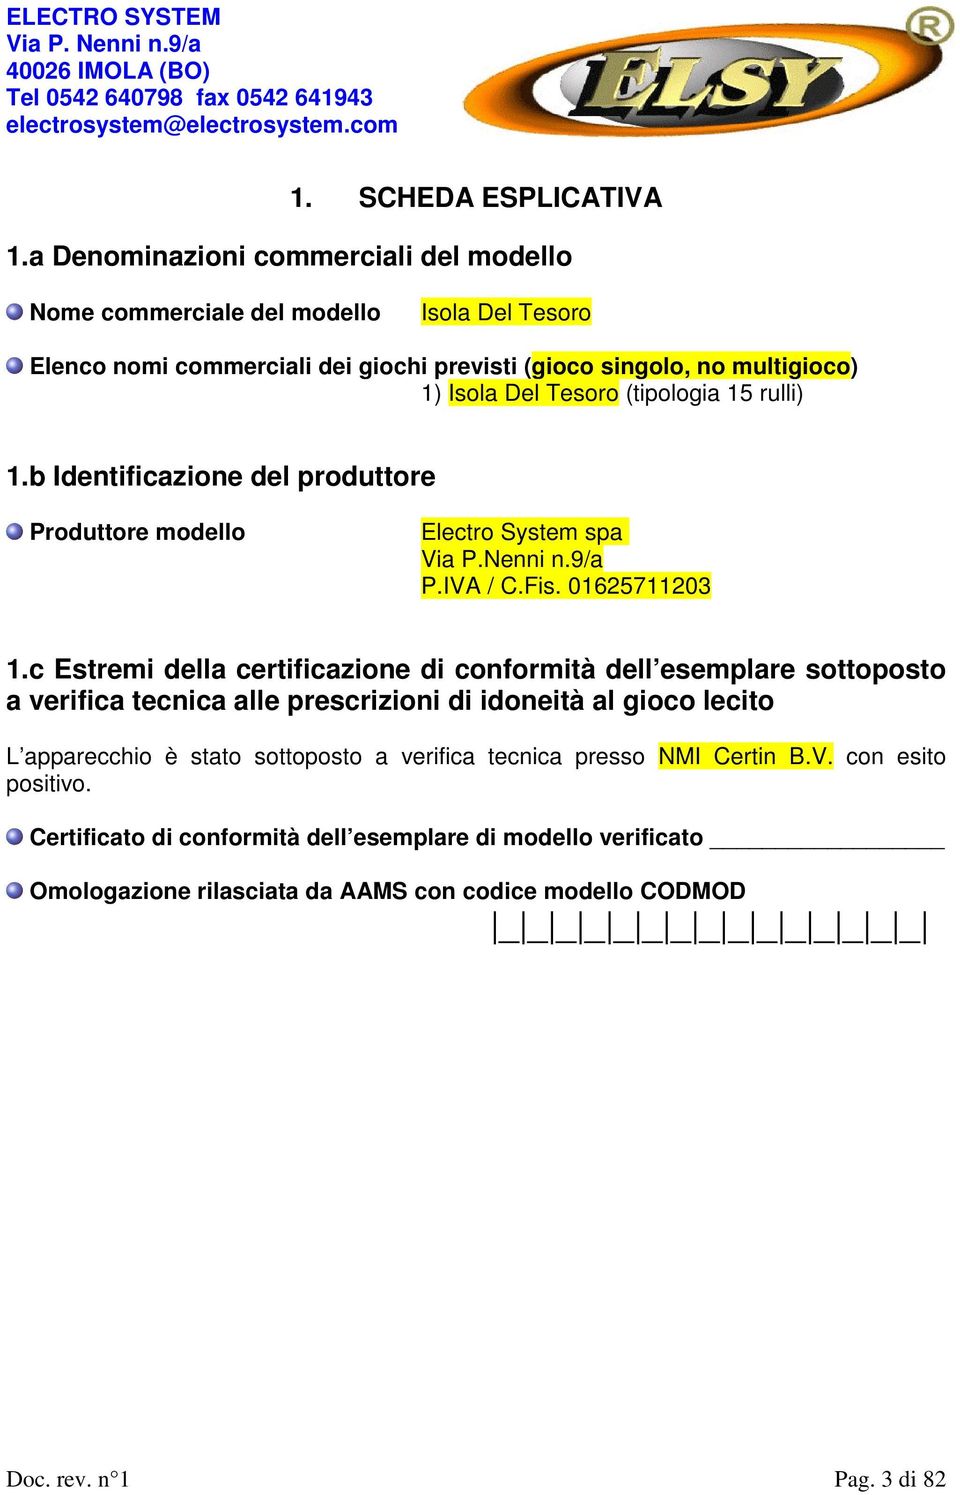 (tipologia 15 rulli) 1.b Identificazione del produttore Produttore modello Electro System spa Via P.Nenni n.9/a P.IVA / C.Fis. 01625711203 1.